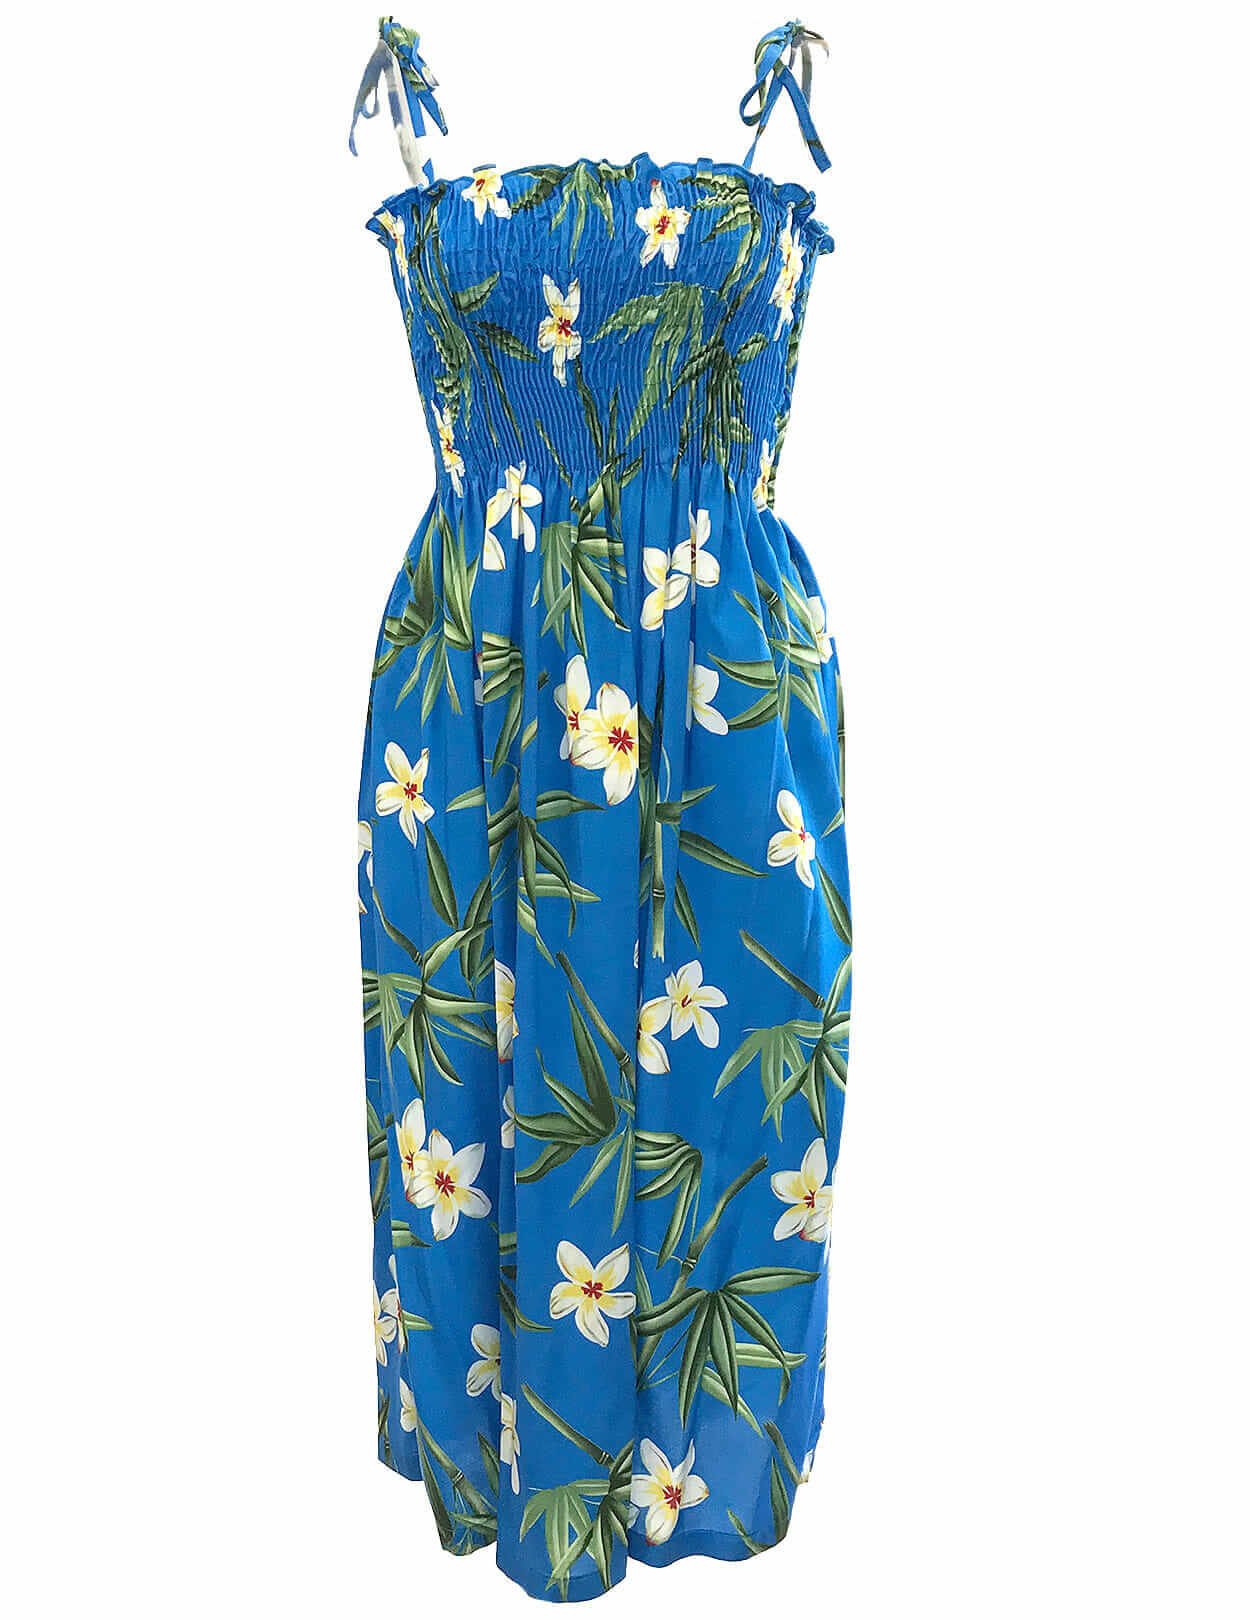 Bamboo Smock Hawaiian Dress Ocean Blue